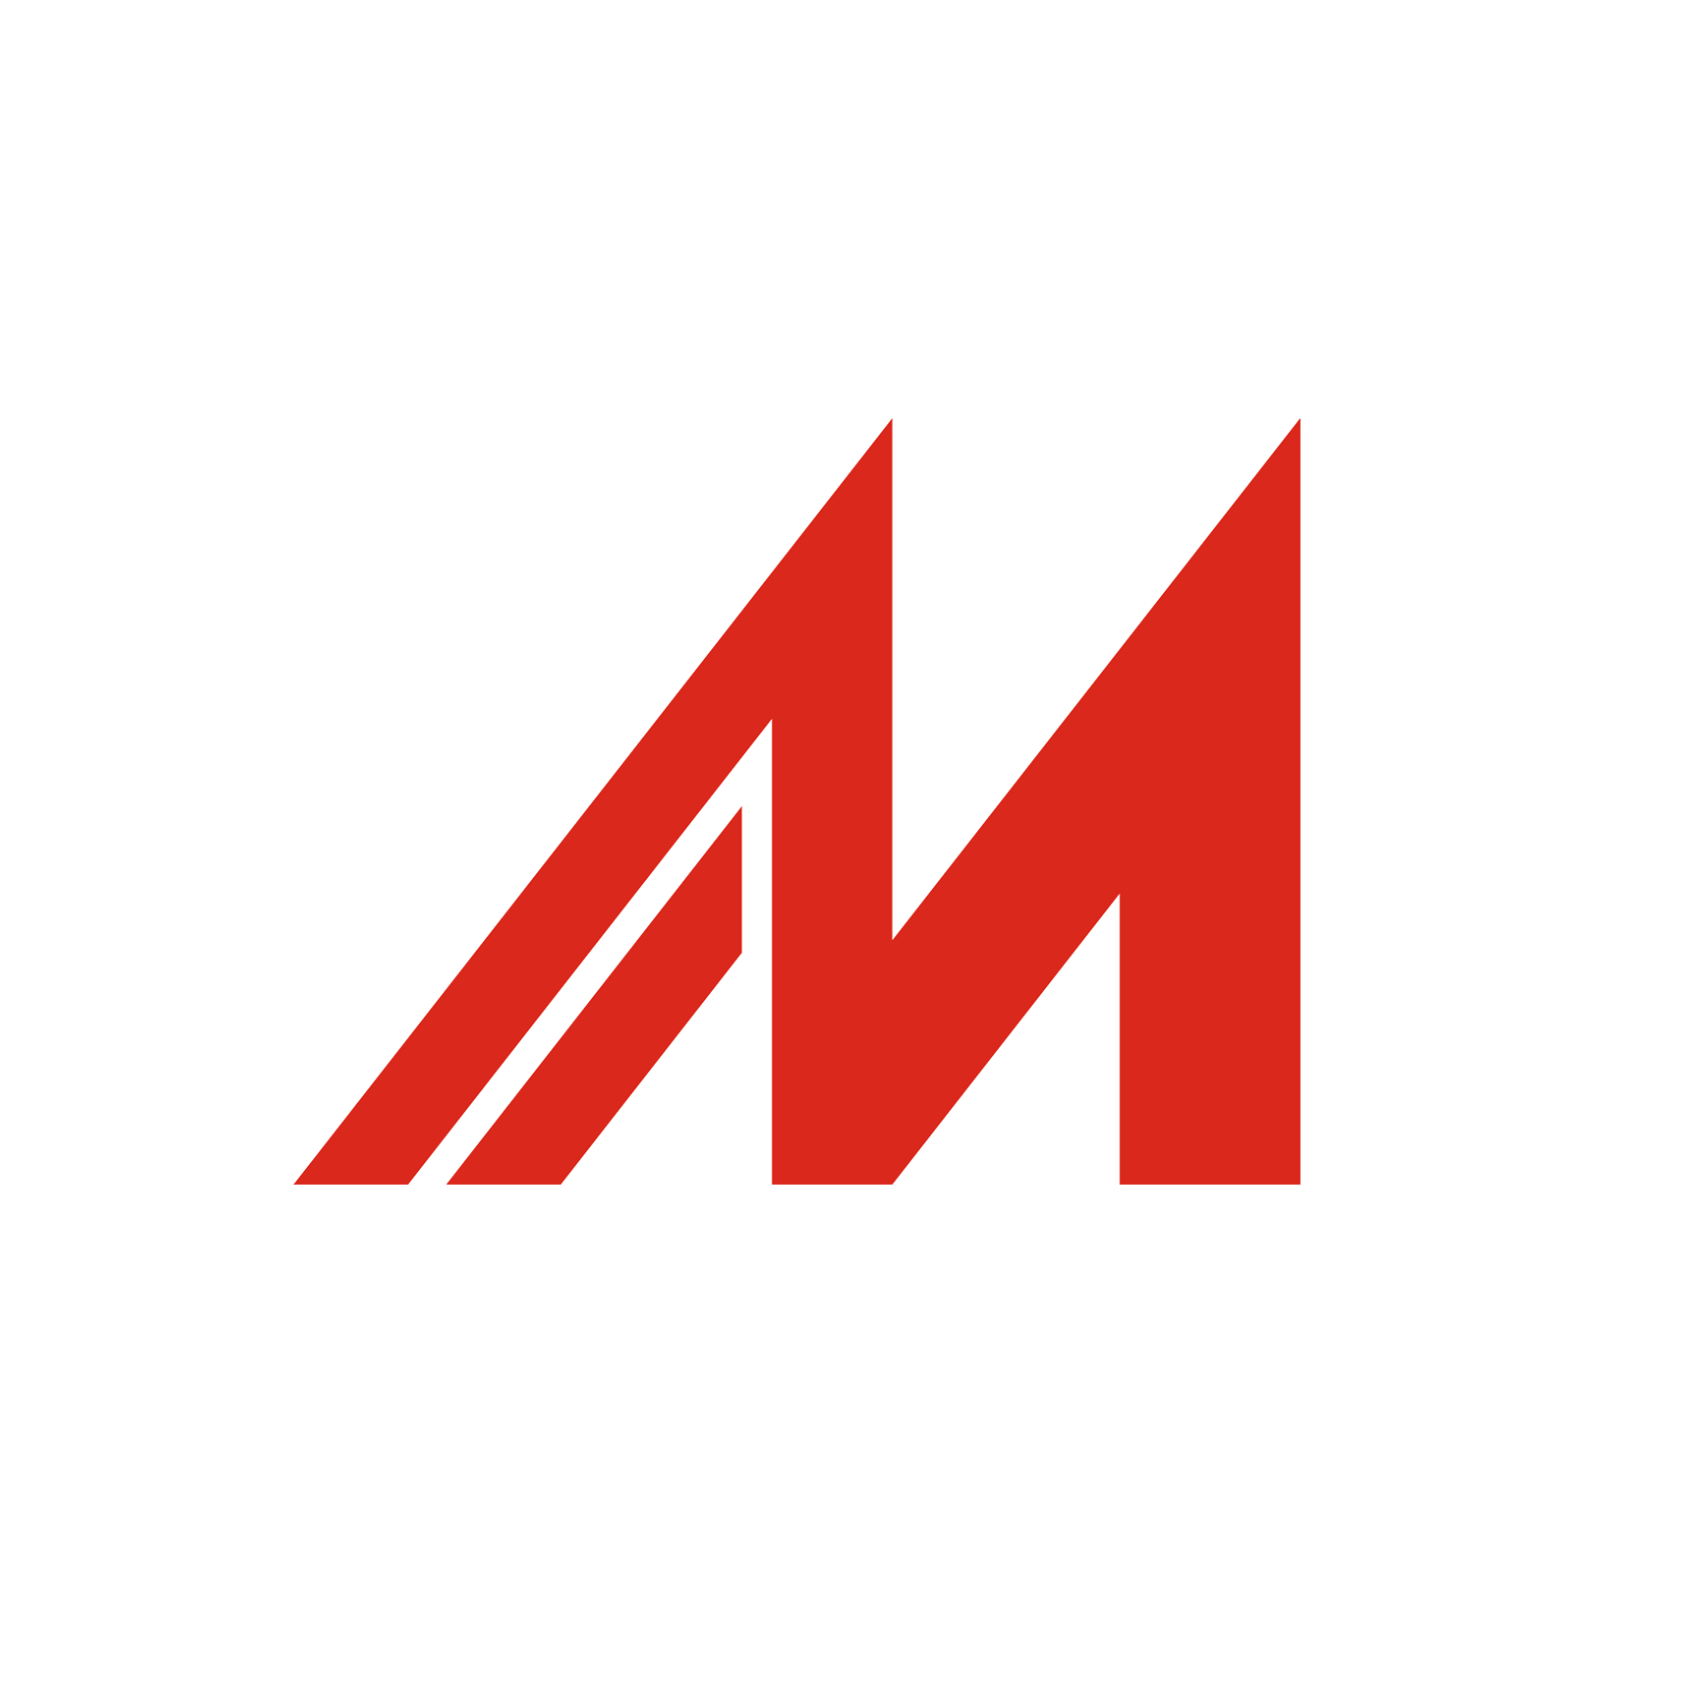 Company logo of Made-in-China.com